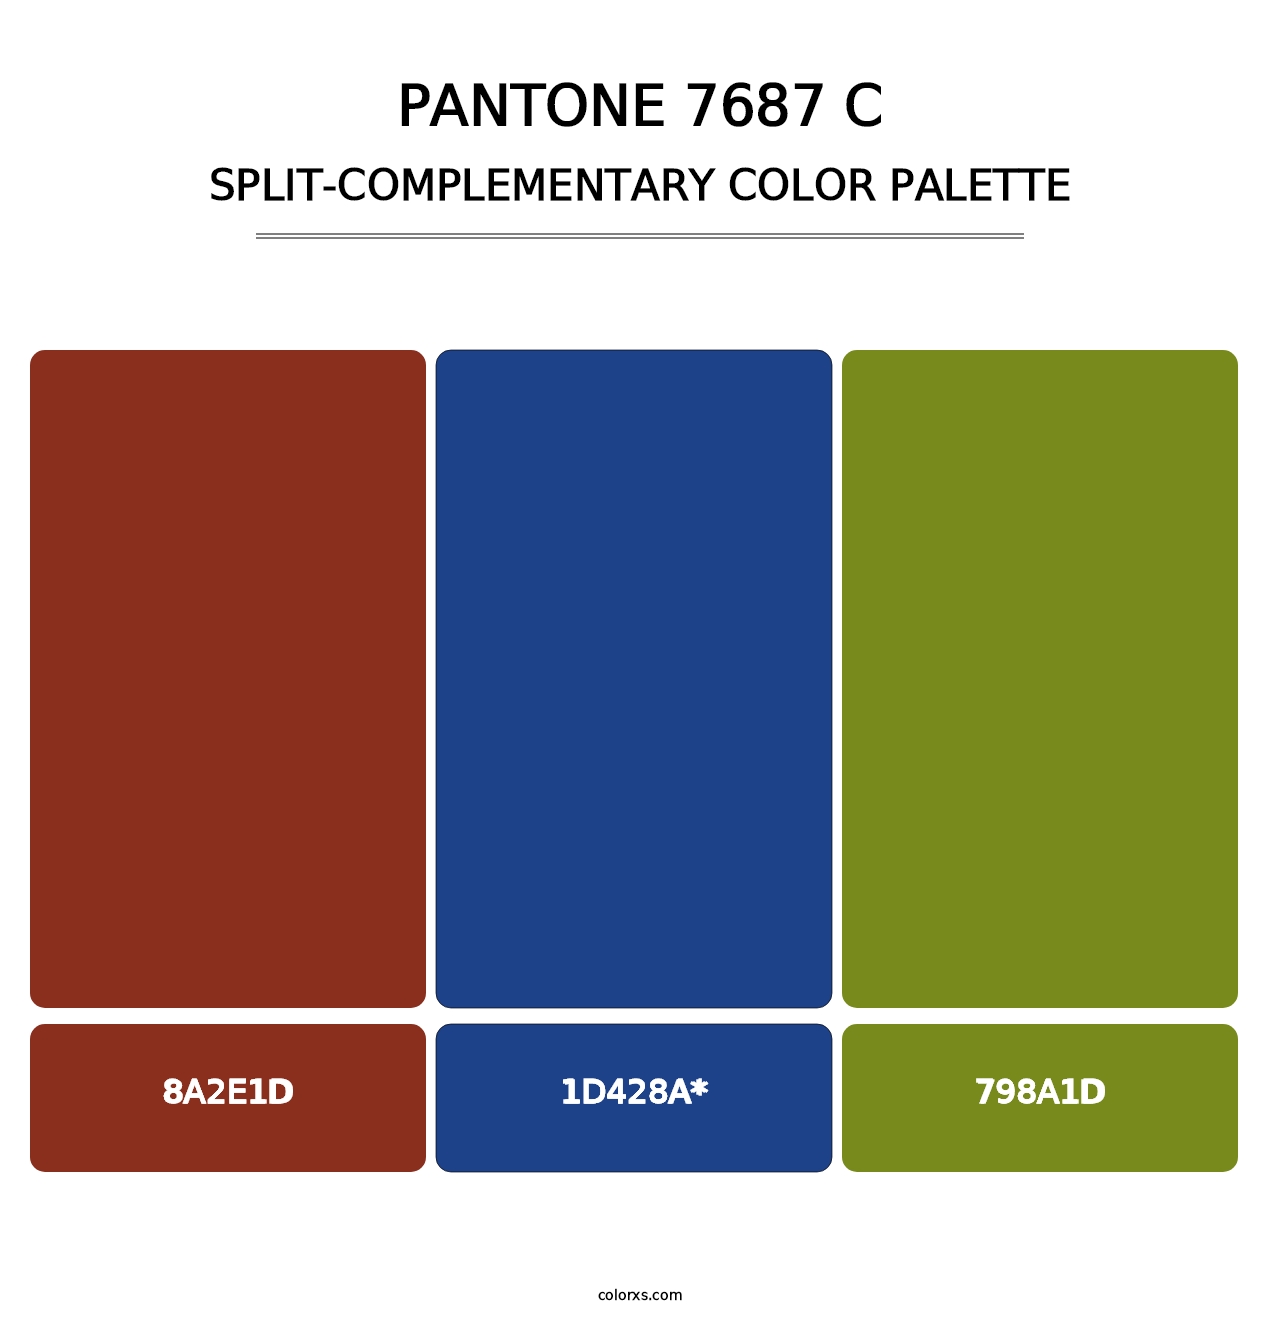 PANTONE 7687 C - Split-Complementary Color Palette